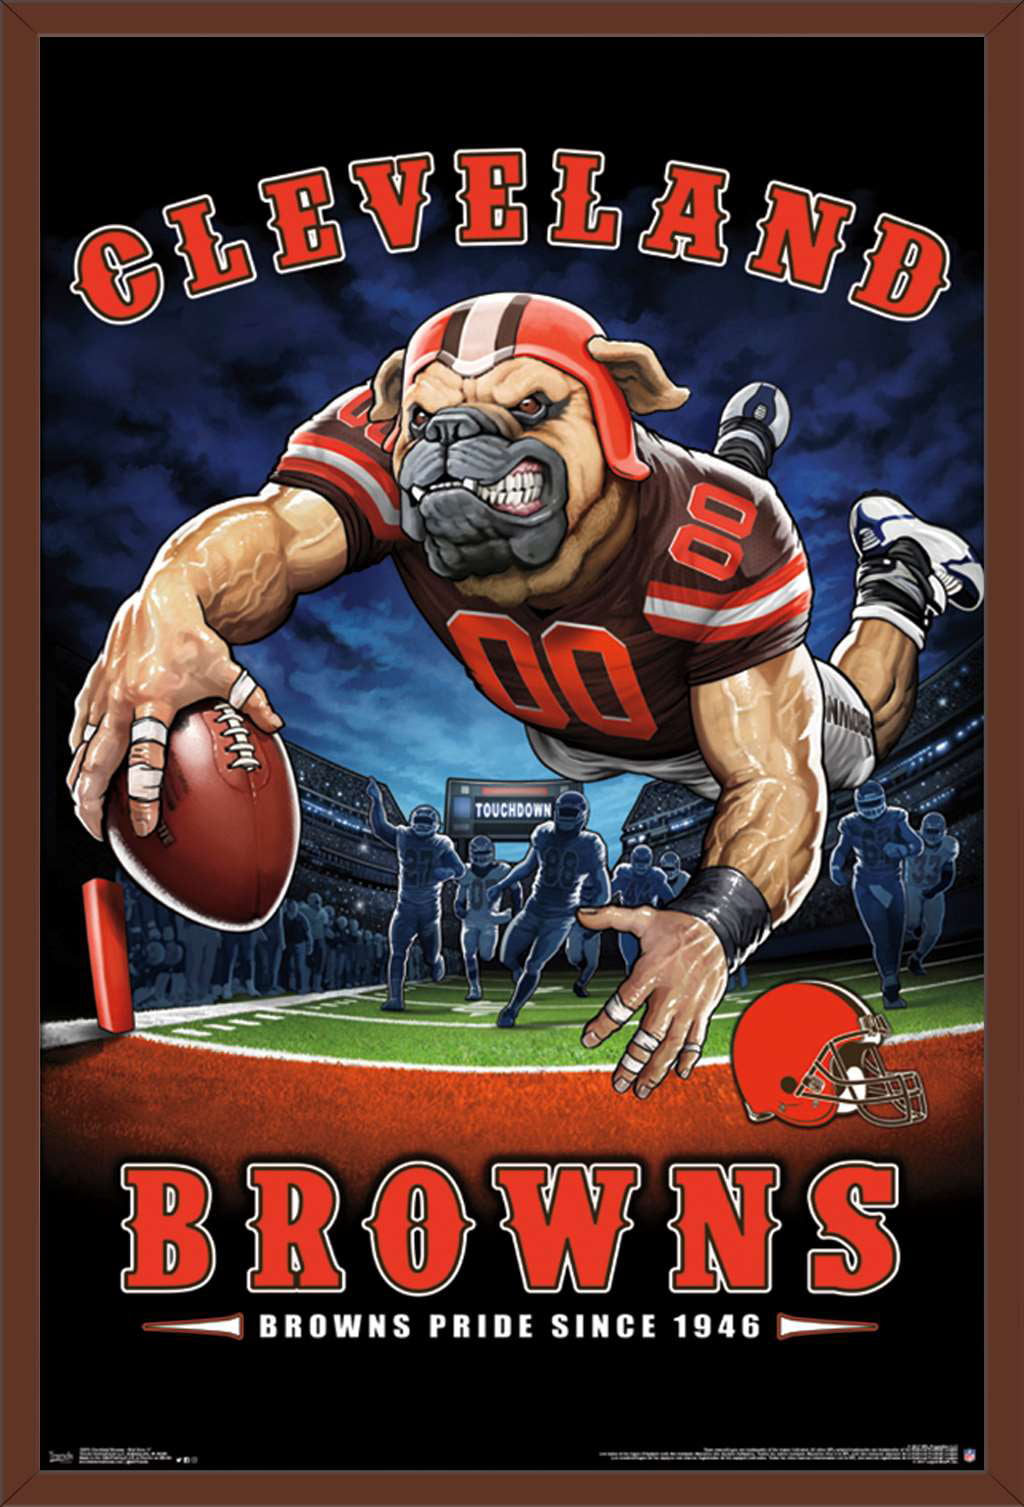 NFL Cleveland Browns - Myles Garrett 21 Wall Poster, 22.375 x 34, Framed  